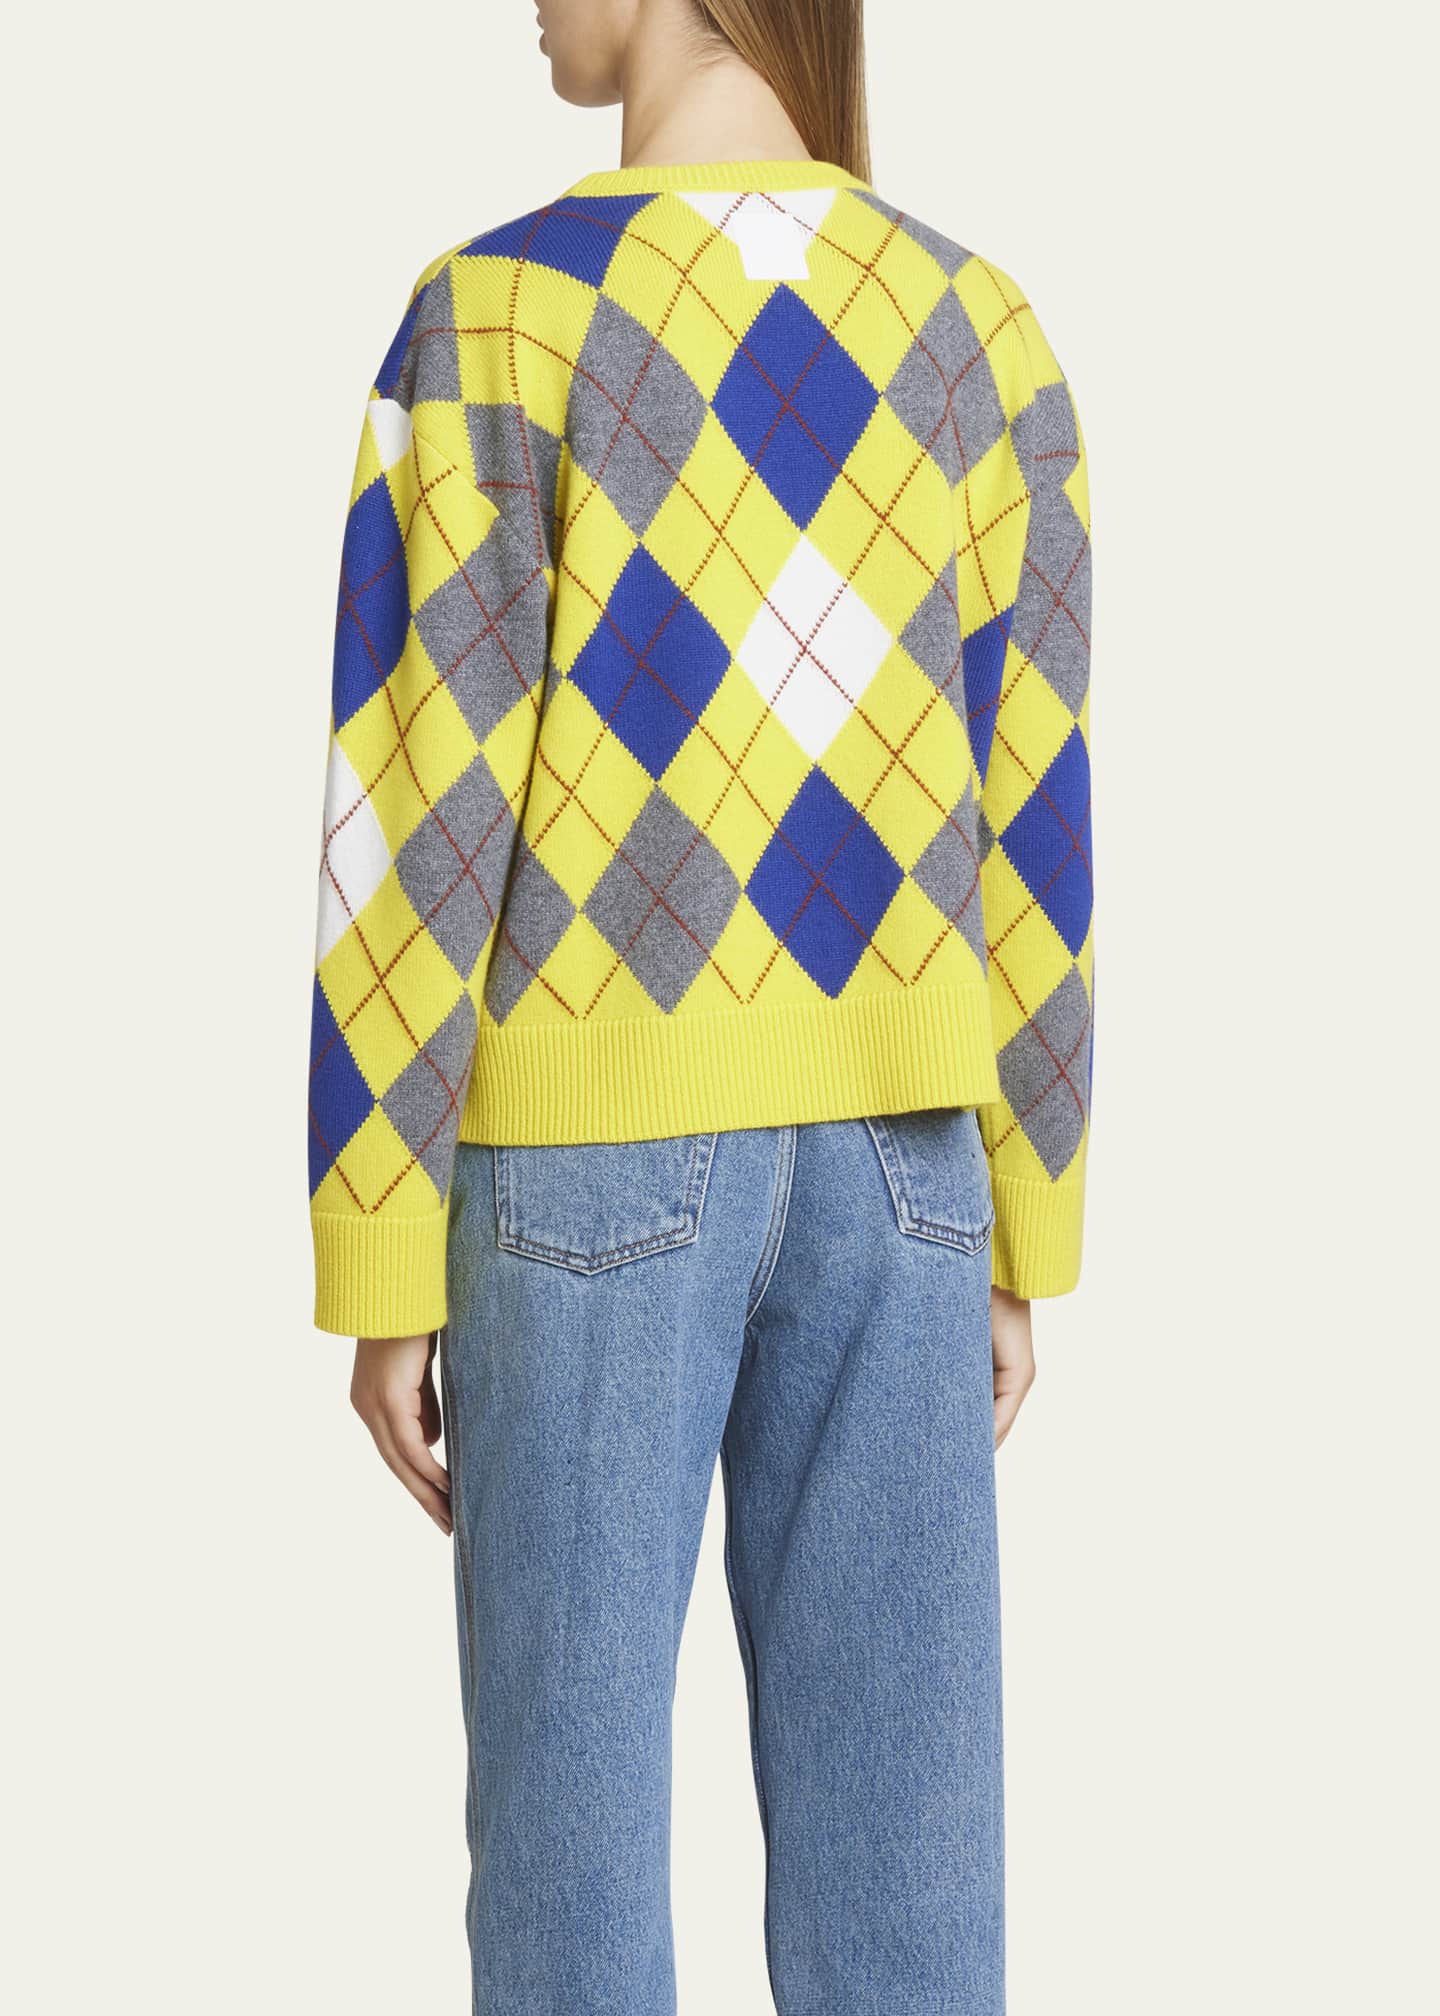 新作 ≪LOEWE≫ Loewe Argyle Sweater アーガイル セーター 黄色